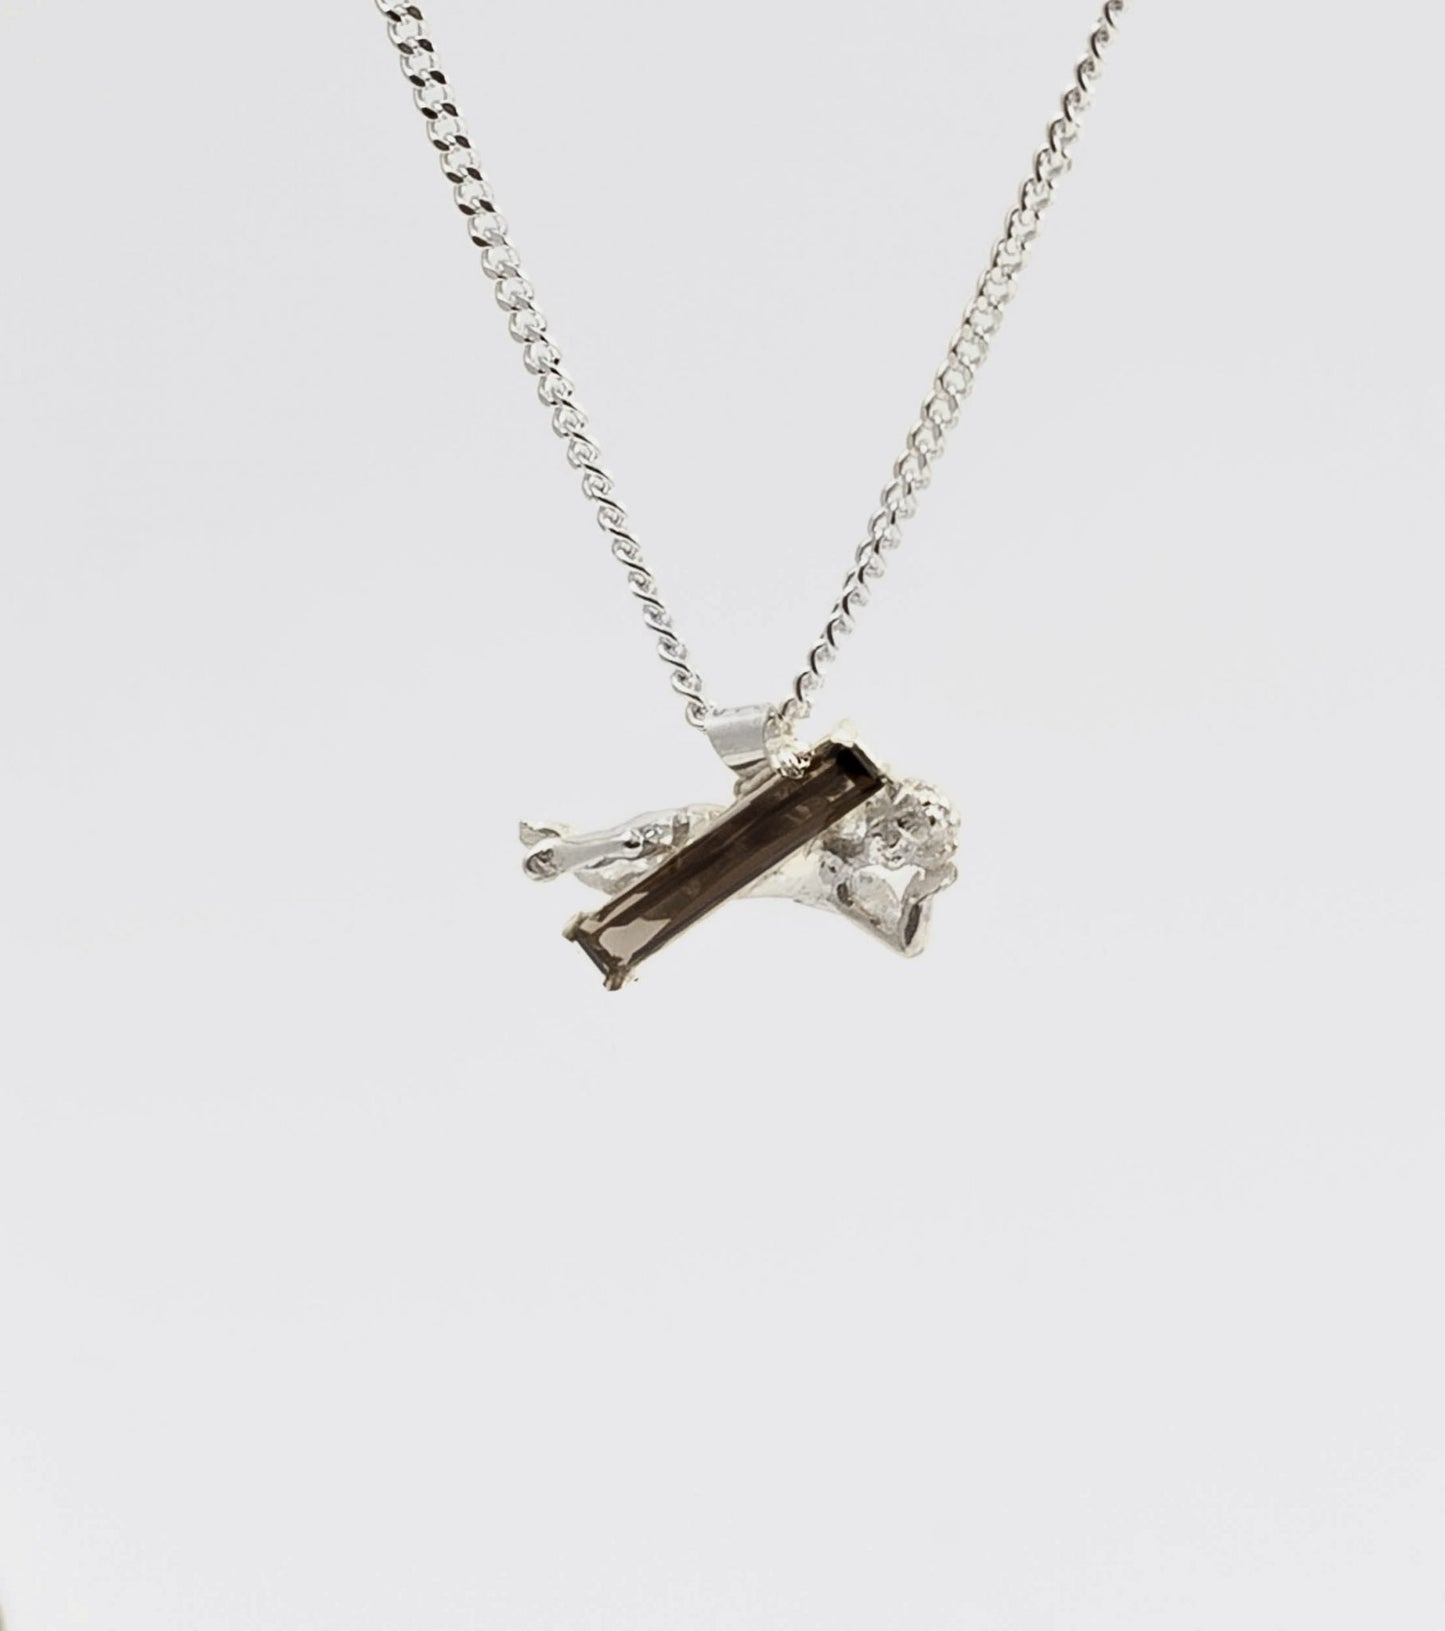 CHERUB necklace with smokey quartz - Sar Jewellery